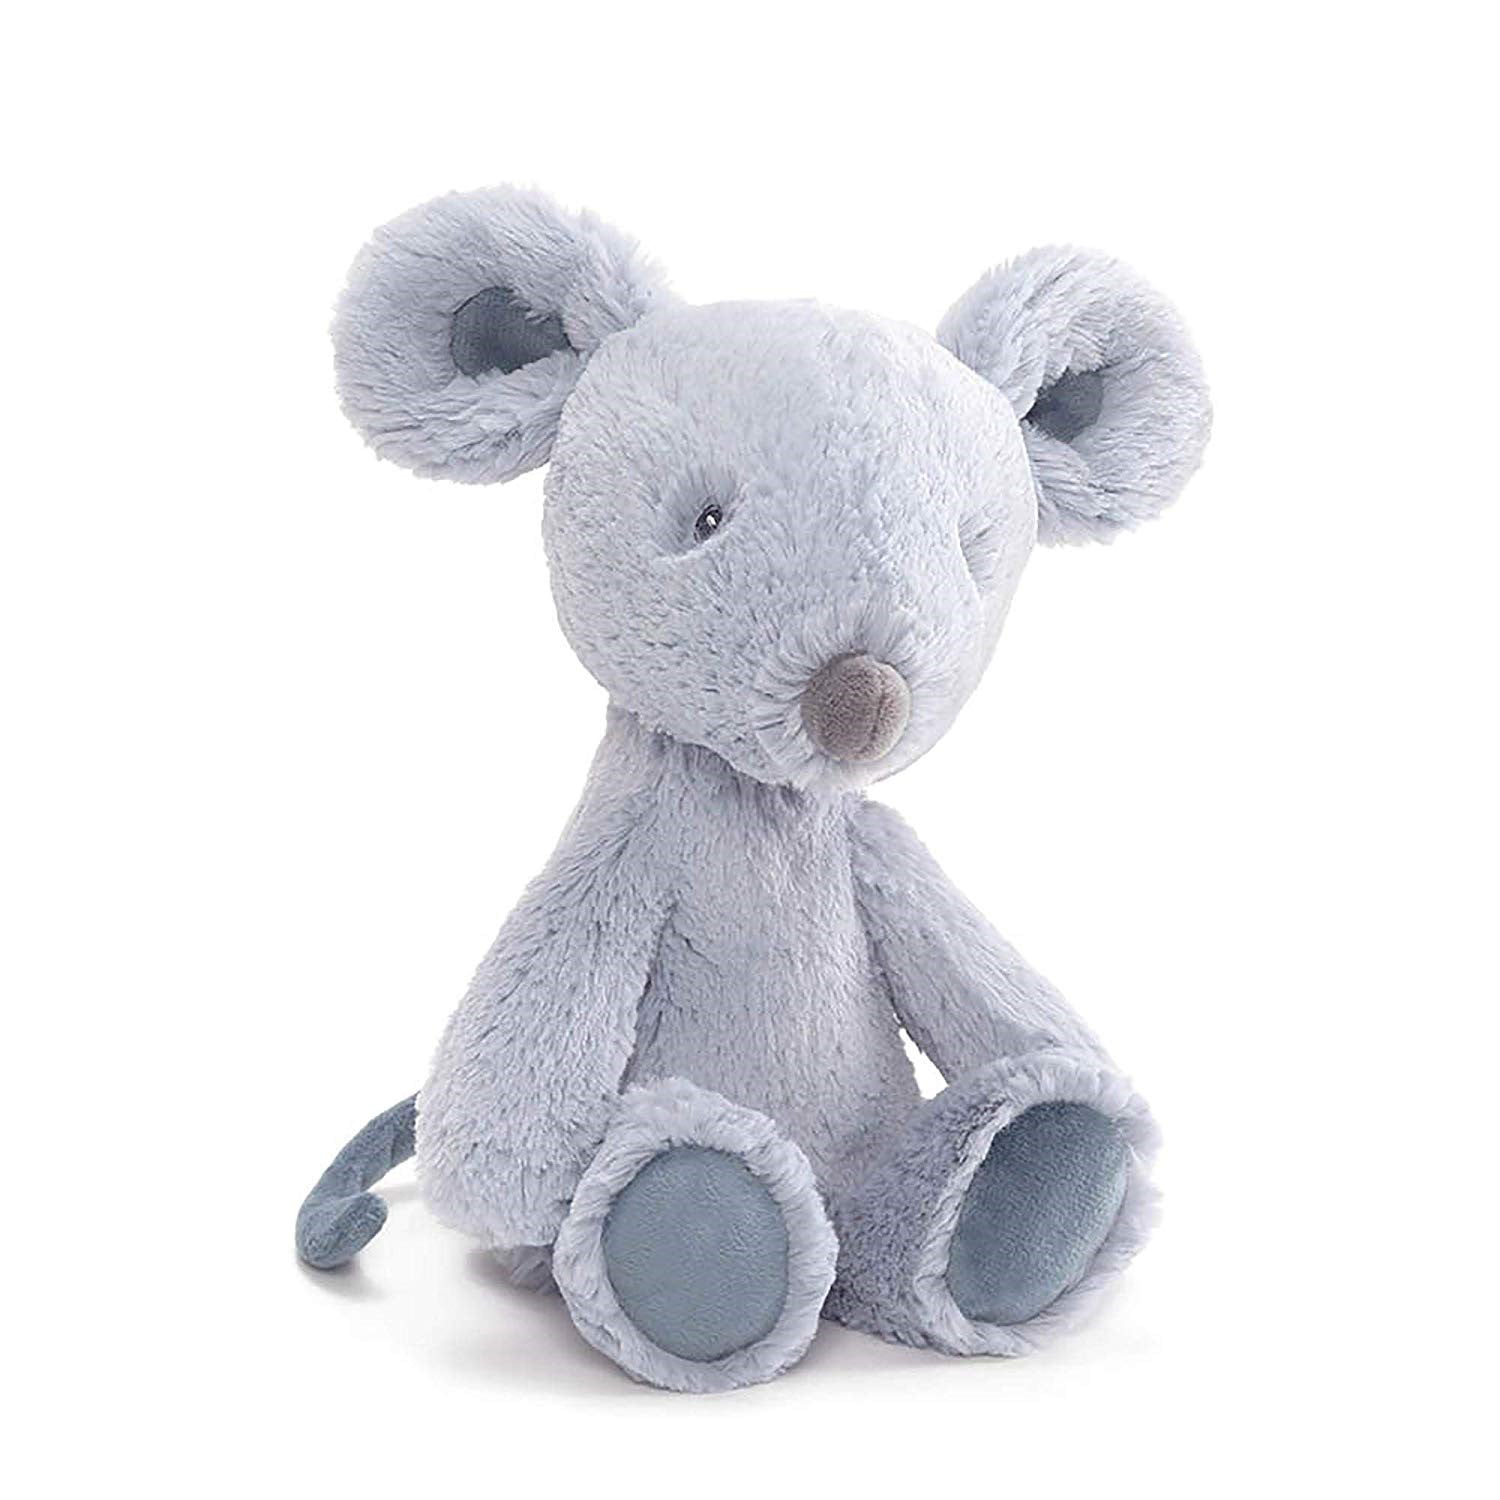 Personalized Stuffed Animal 12 inch Gund Koala 